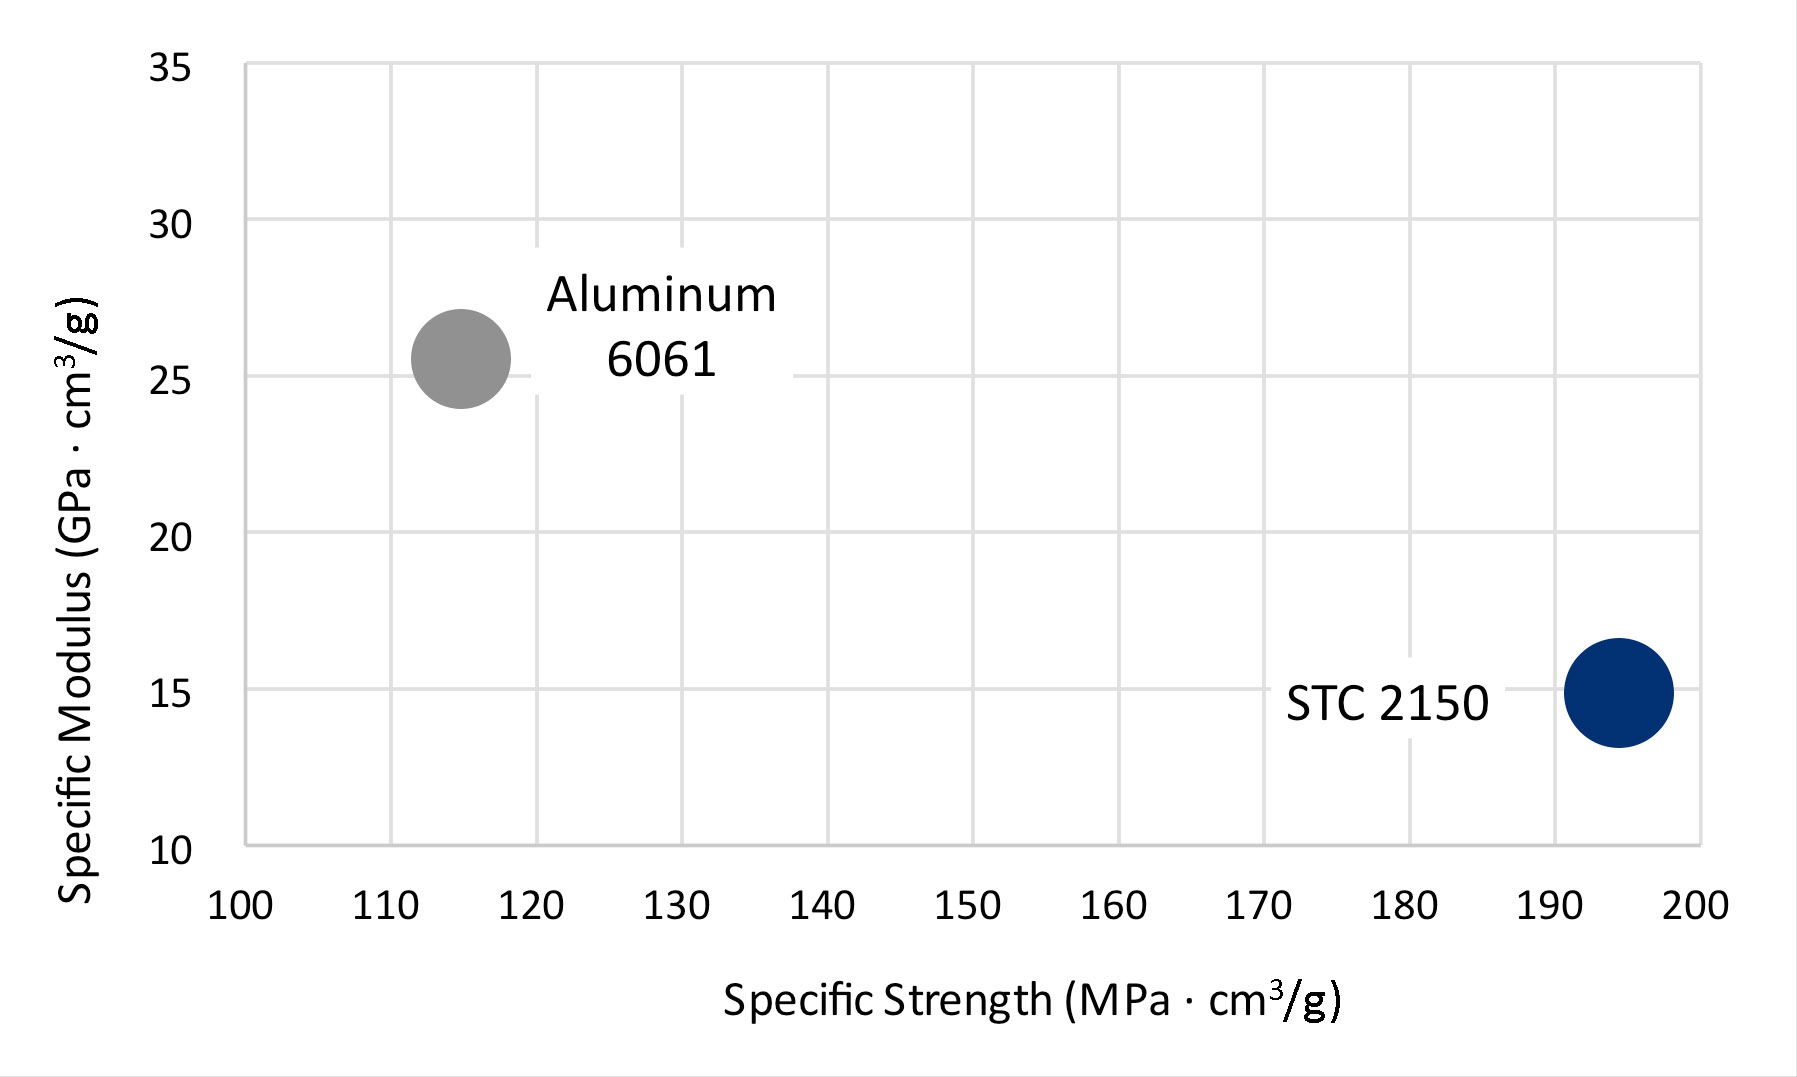 Fortium STC 2150 compared to aluminum